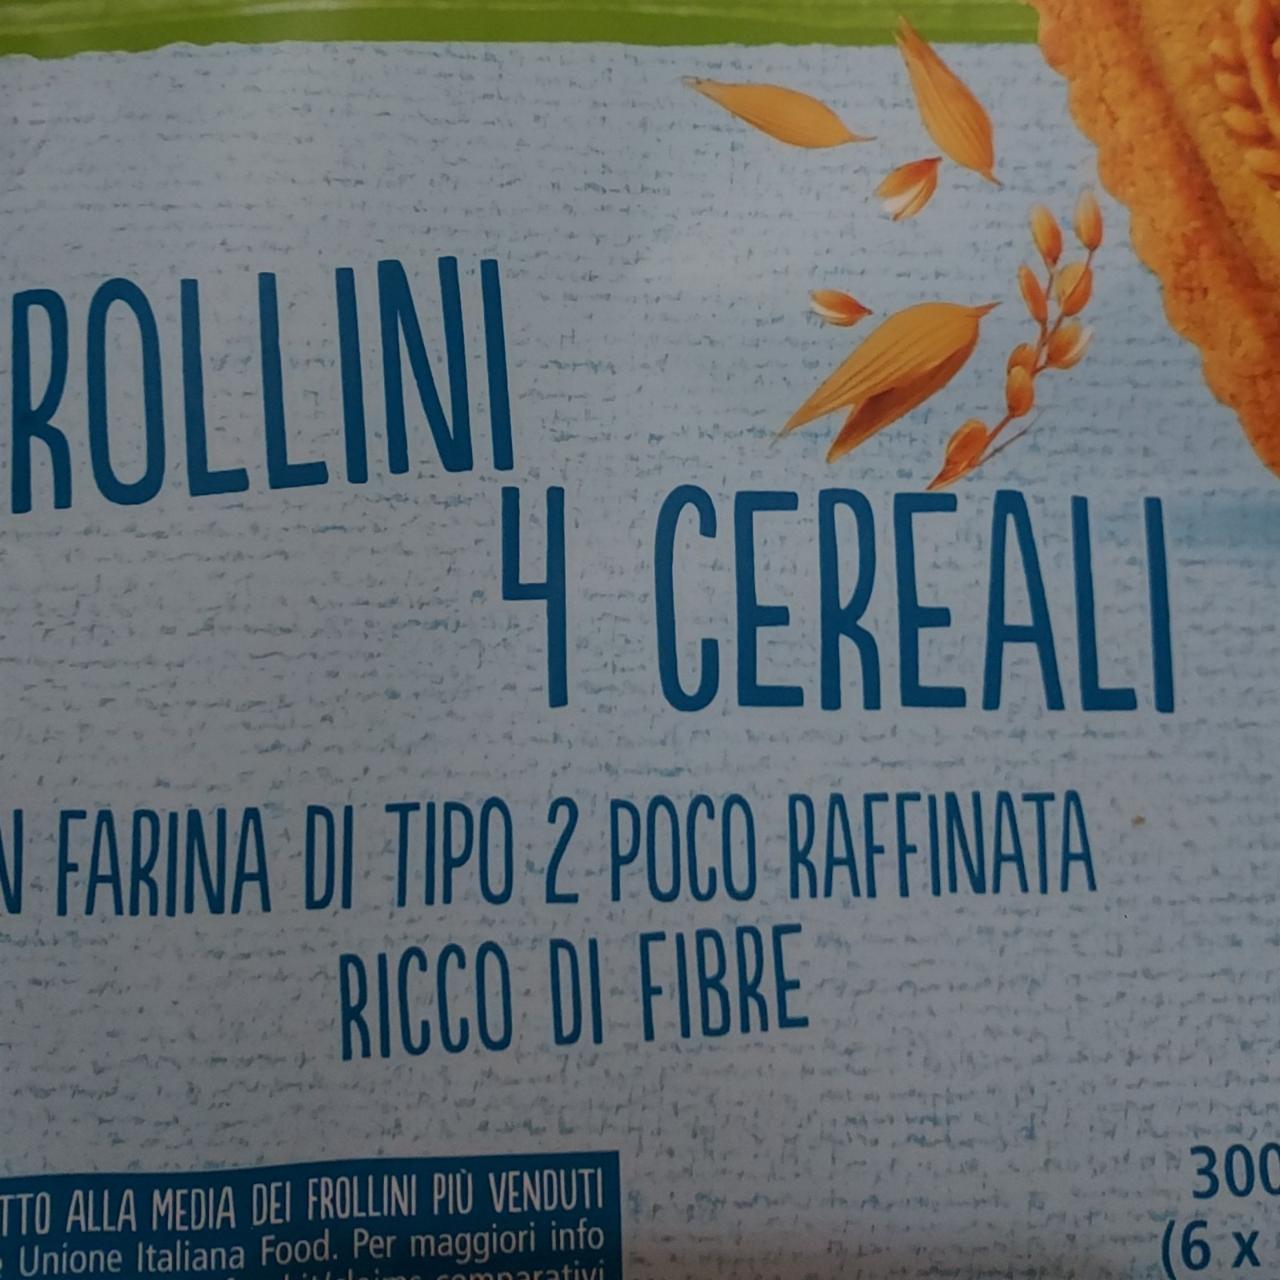 Fotografie - Frollini 4 cereali Dolciando